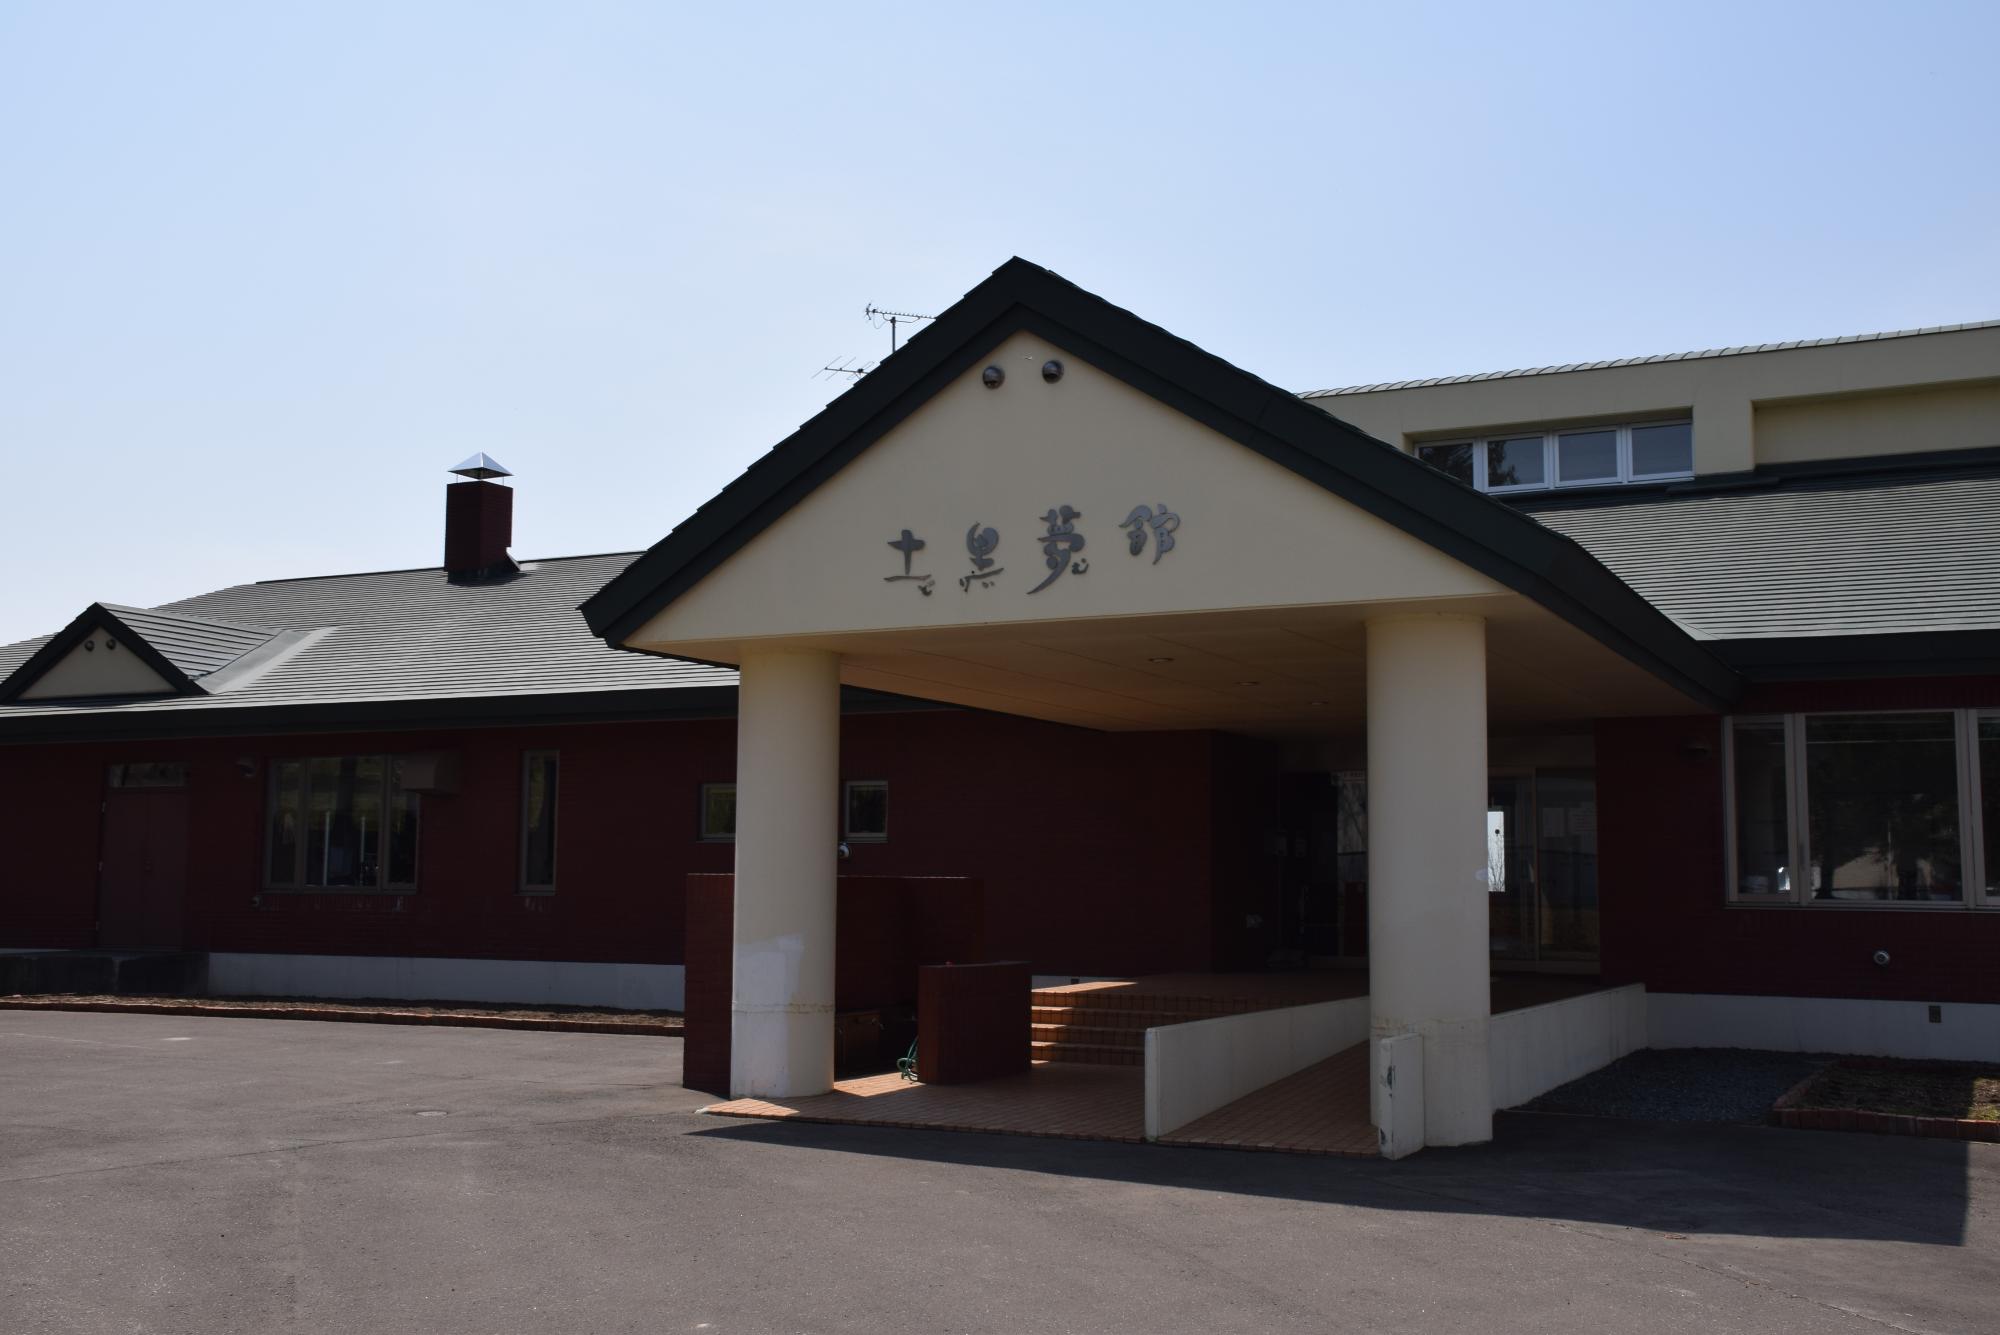 栗沢クラインガルテンの管理棟である「土里夢館」の入口の写真